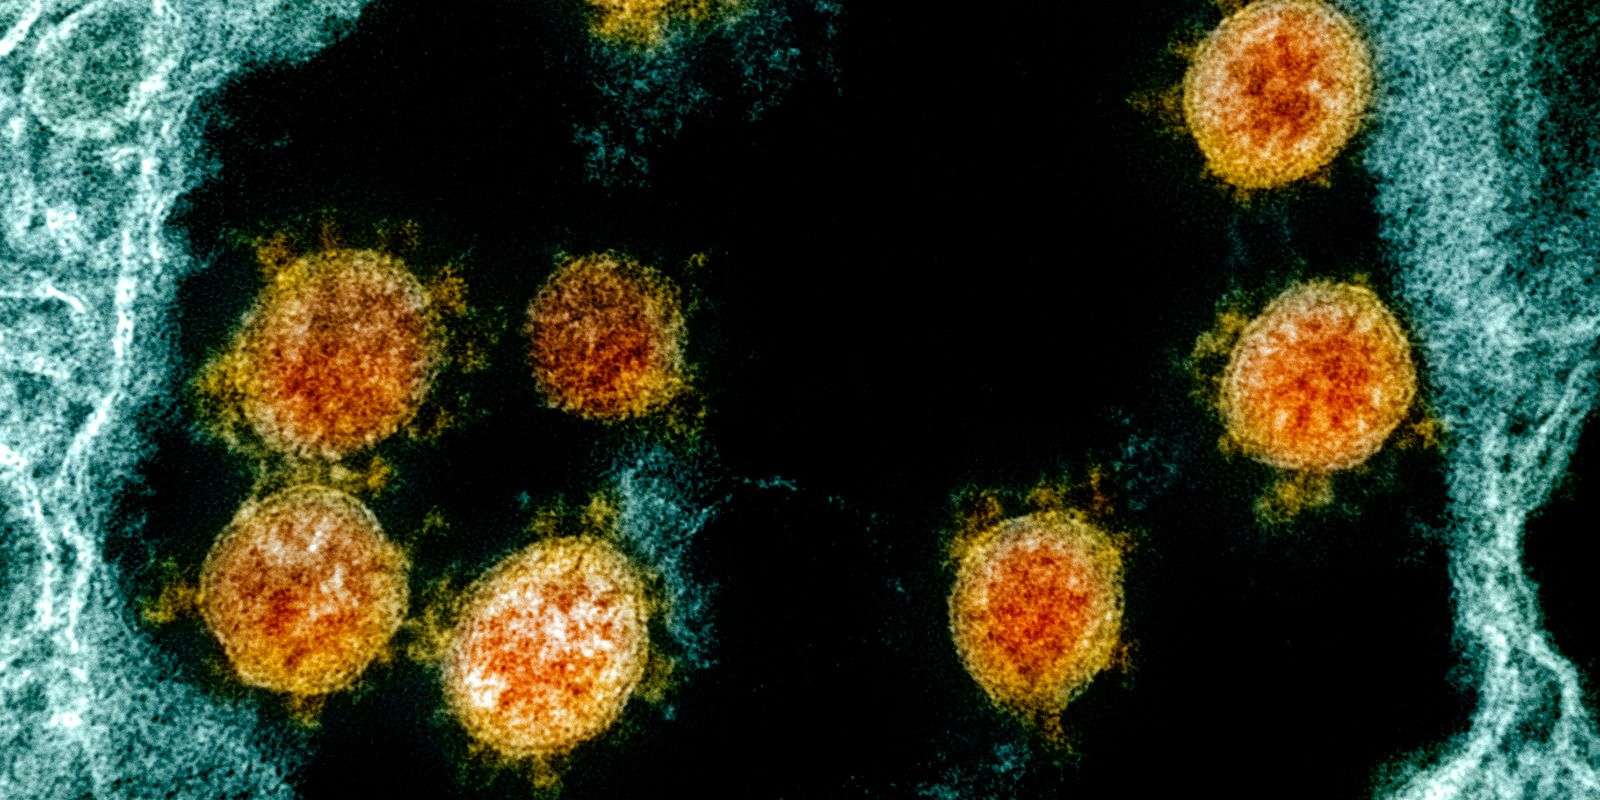 Vucruz und Harvard Erklärung der übermäßigen Entzündung des COVID-19-Virus